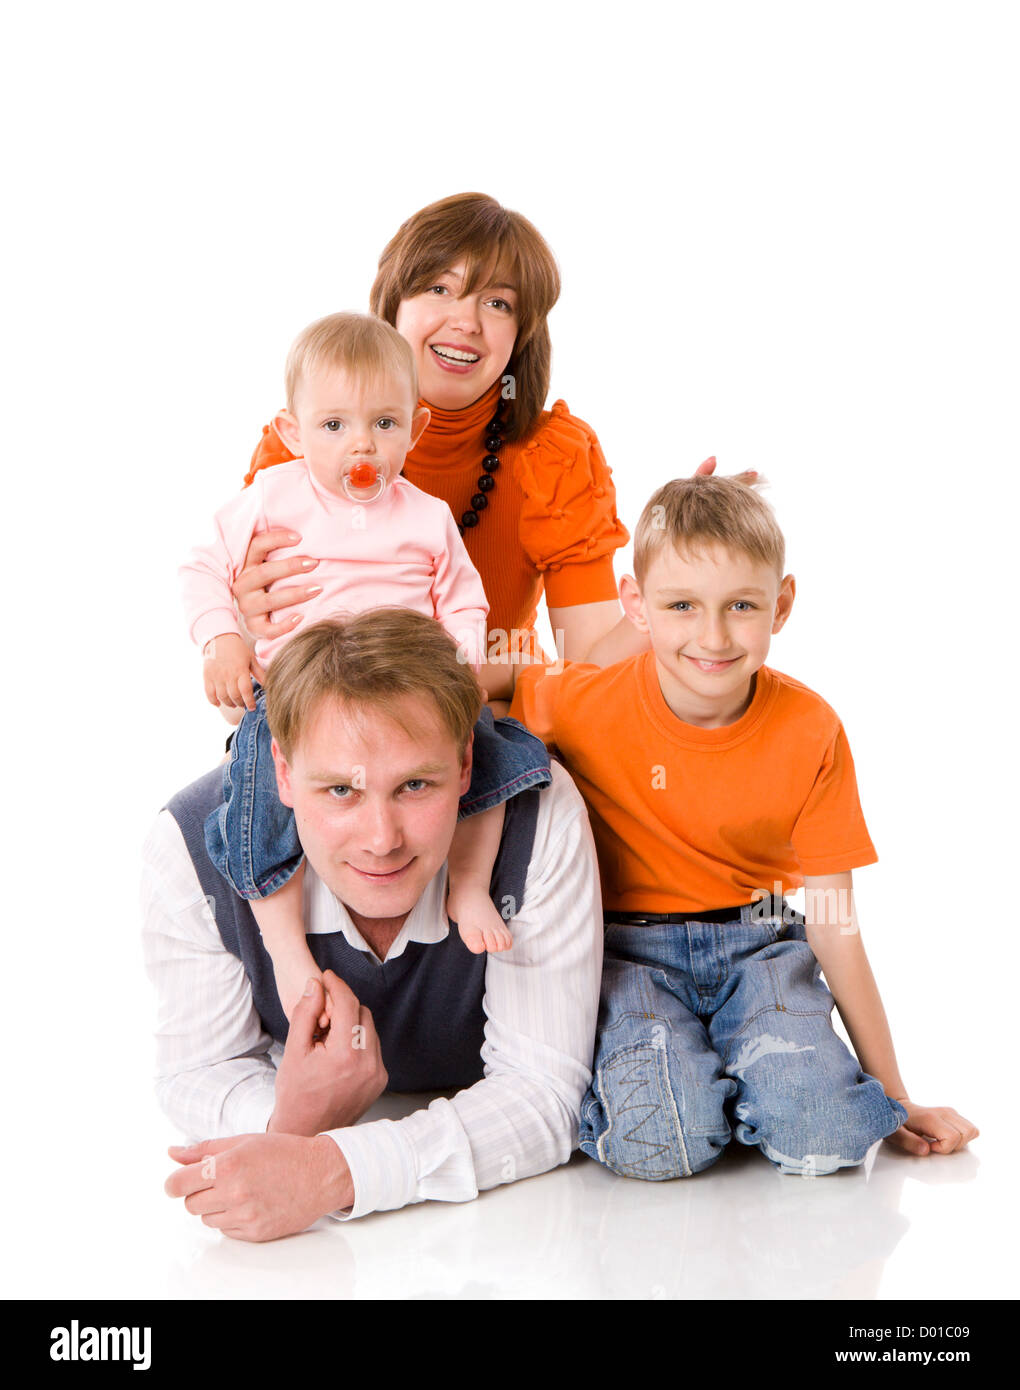 Famille heureuse avec deux enfants ensemble isolated on white Banque D'Images